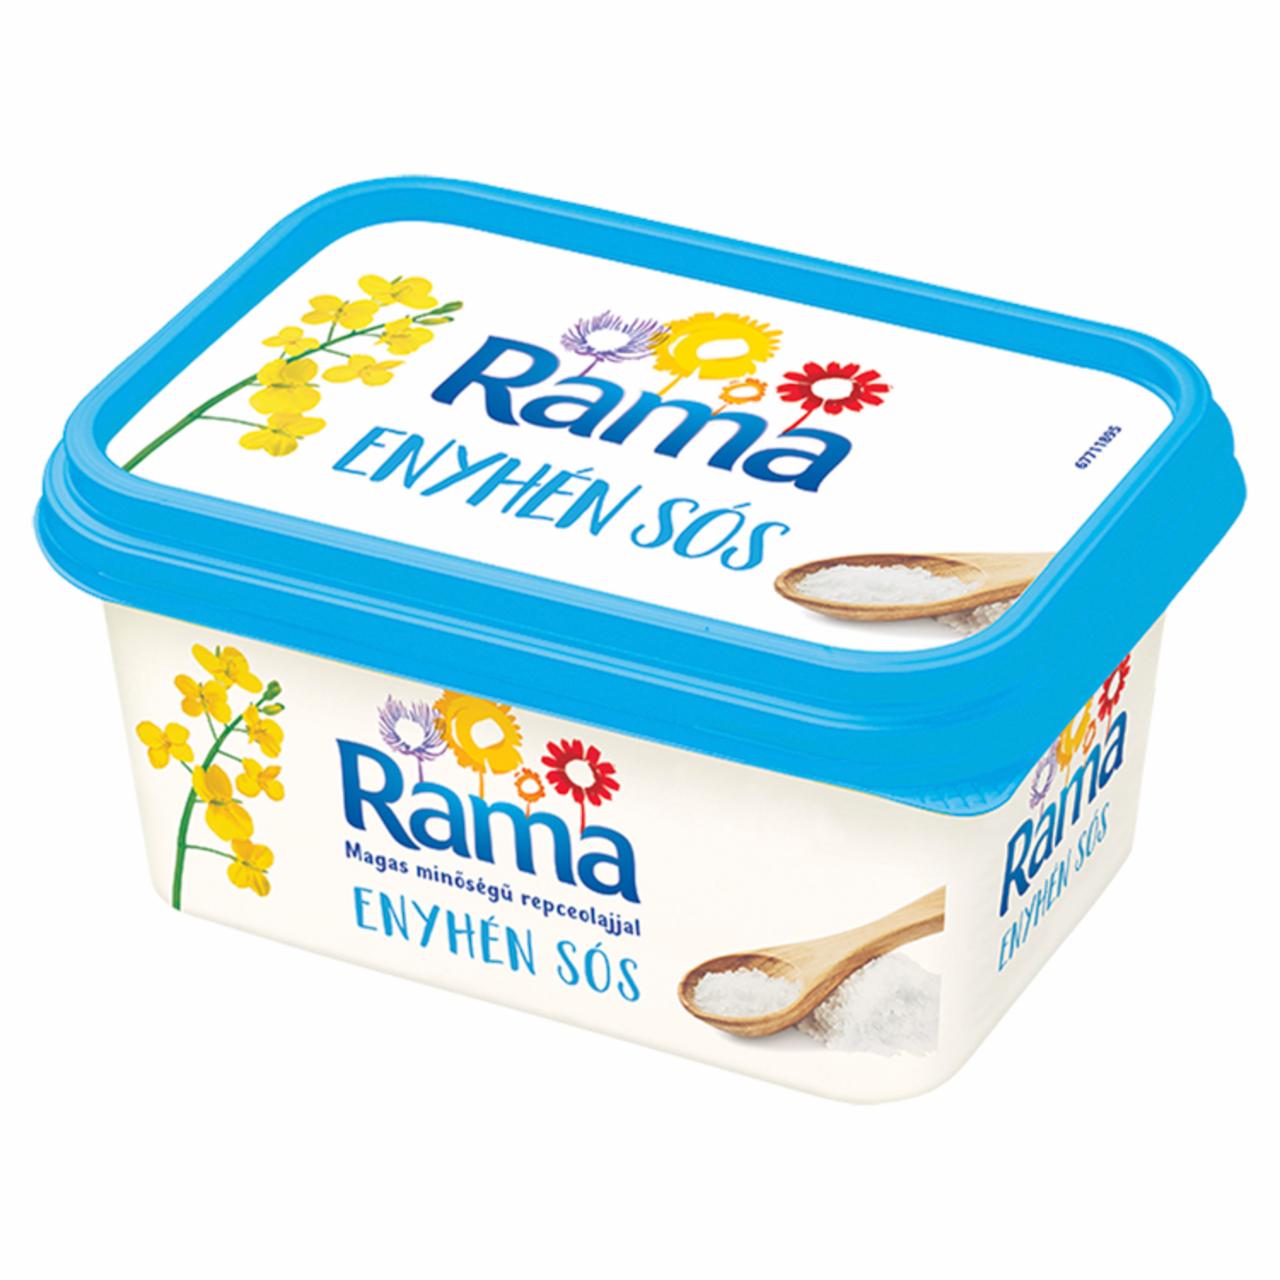 Képek - Rama enyhén sós, csökkentett zsírtartalmú margarin 500 g